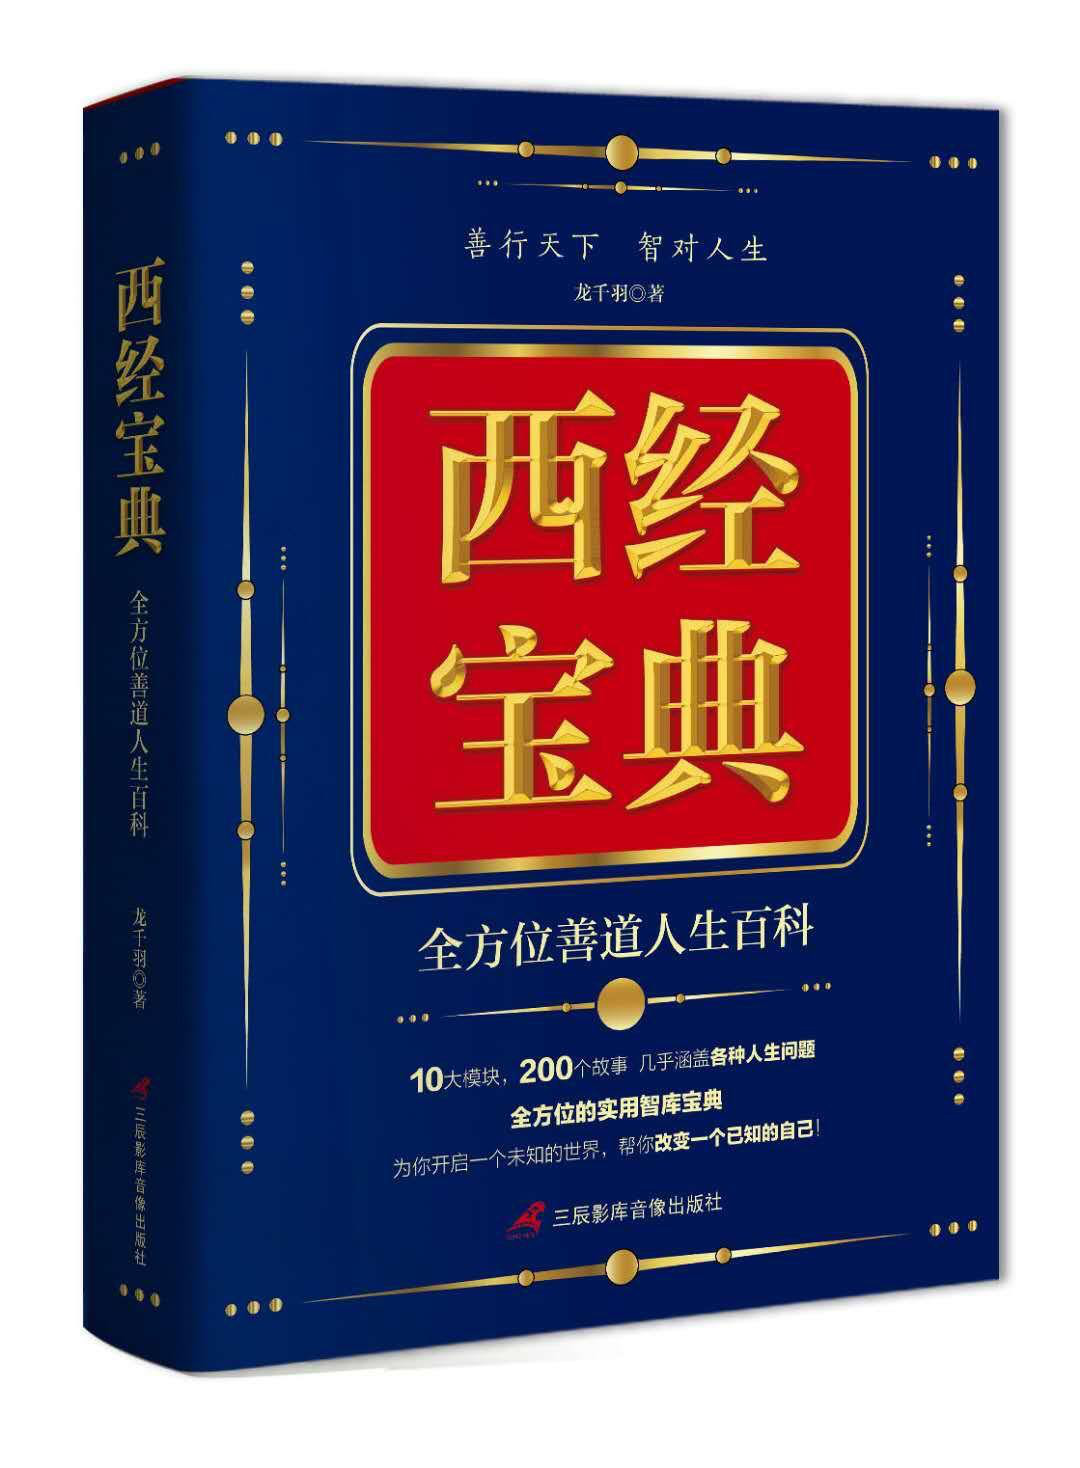 模块化超级百科书《西经宝典》中的文章：中国超级大学排行榜